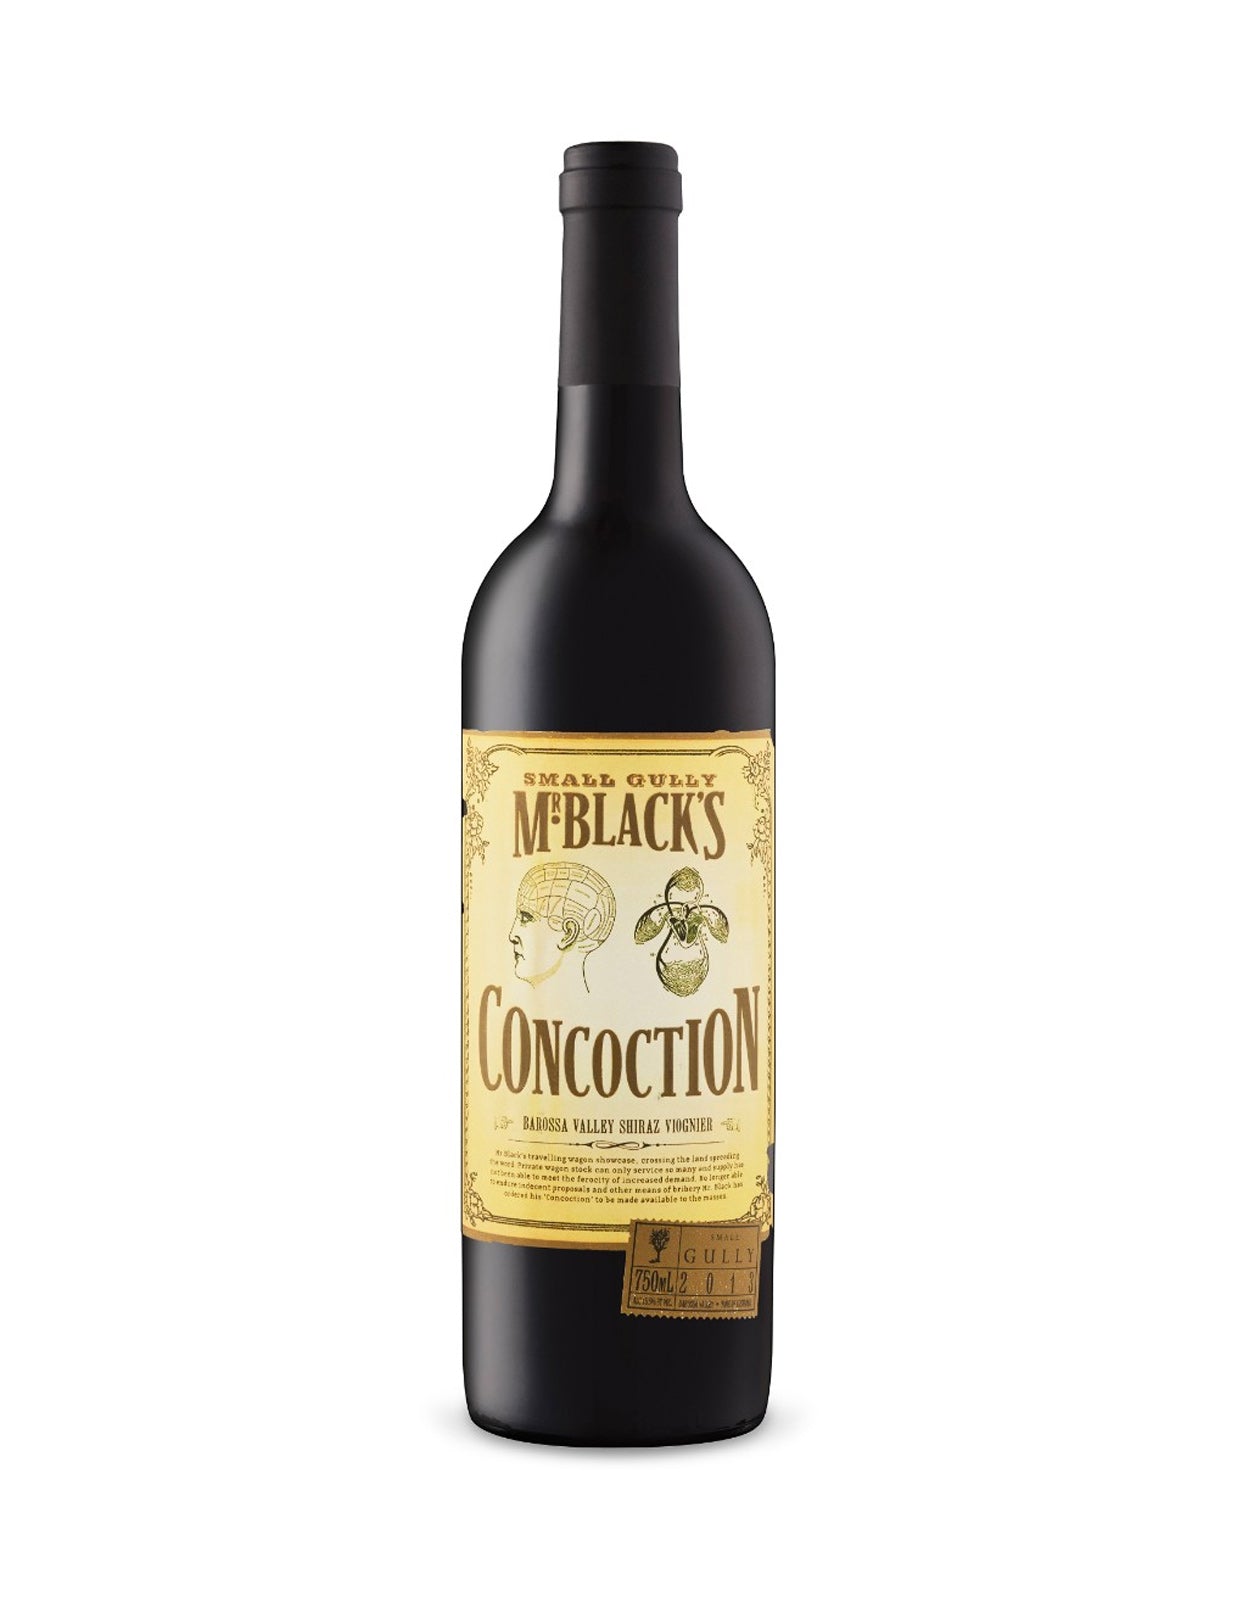 Small Gully Mr Black's Concoction Shiraz-Viognier 2015